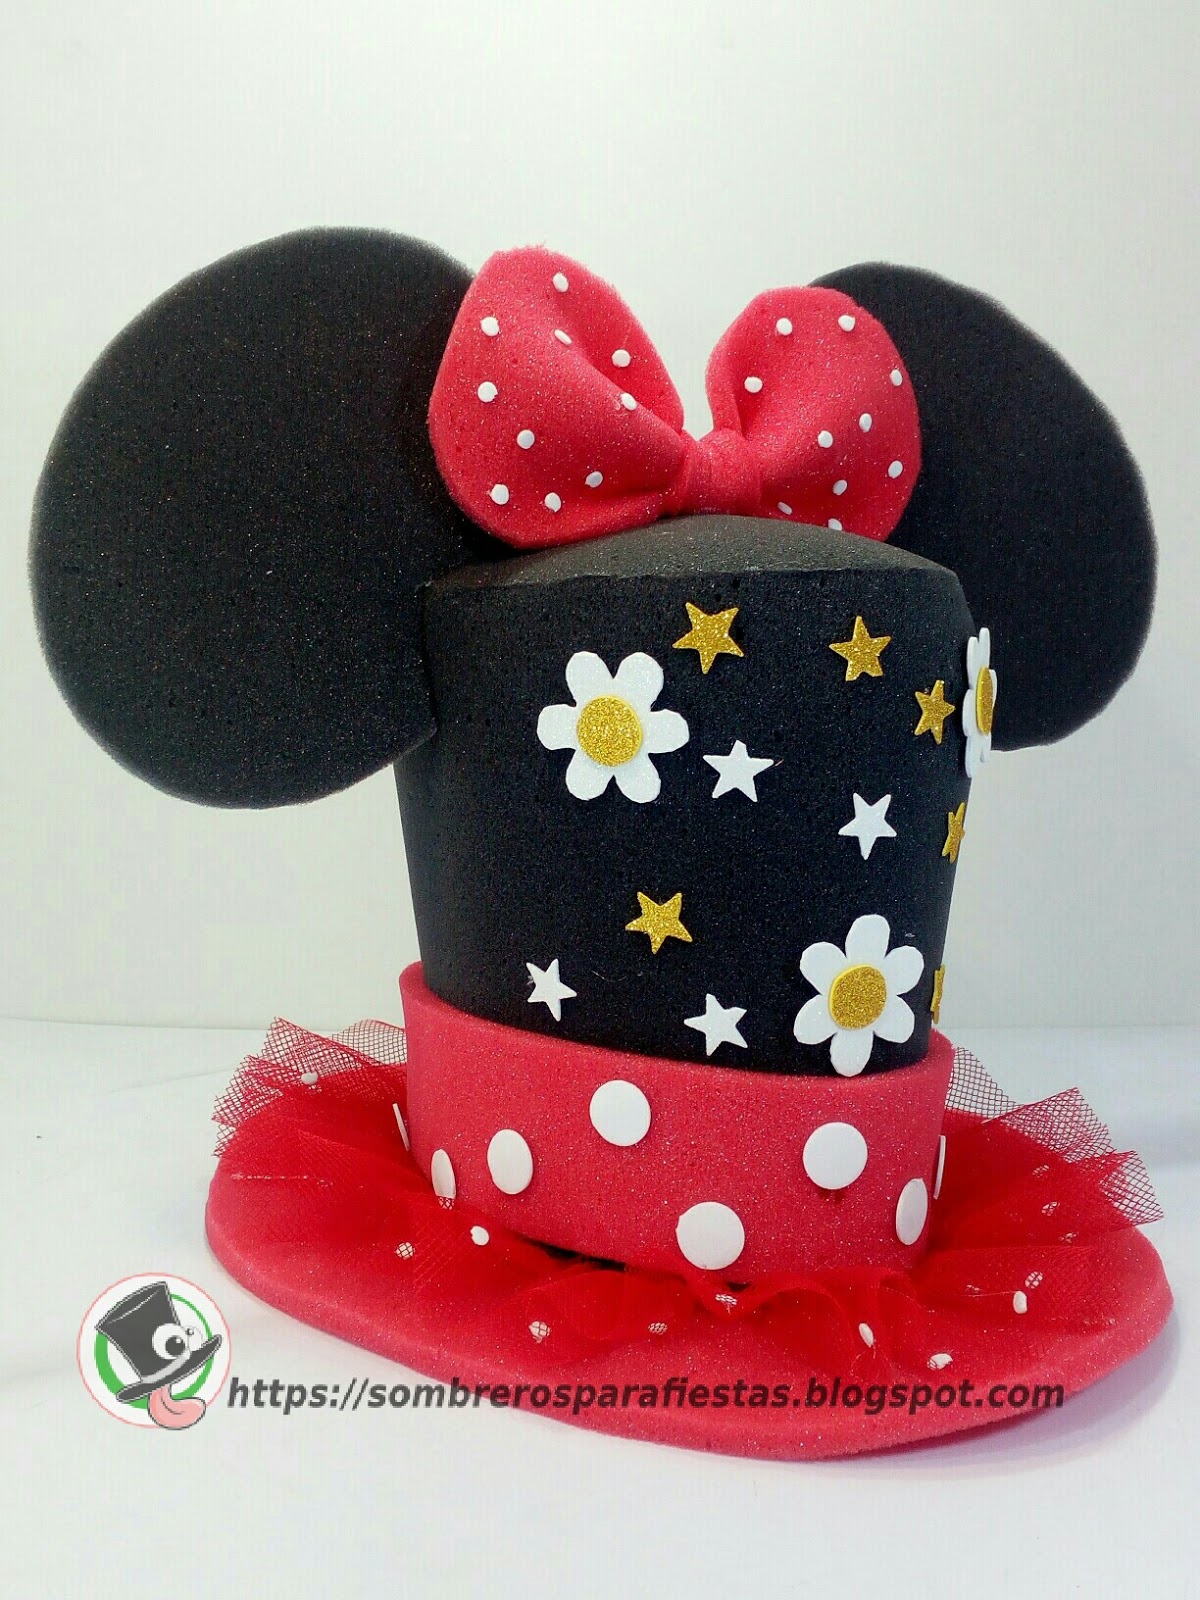 Venta de Sombreros locos en Puebla, de espuma para diseños personalizados: Sombrero con tema de Minnie Mouse.